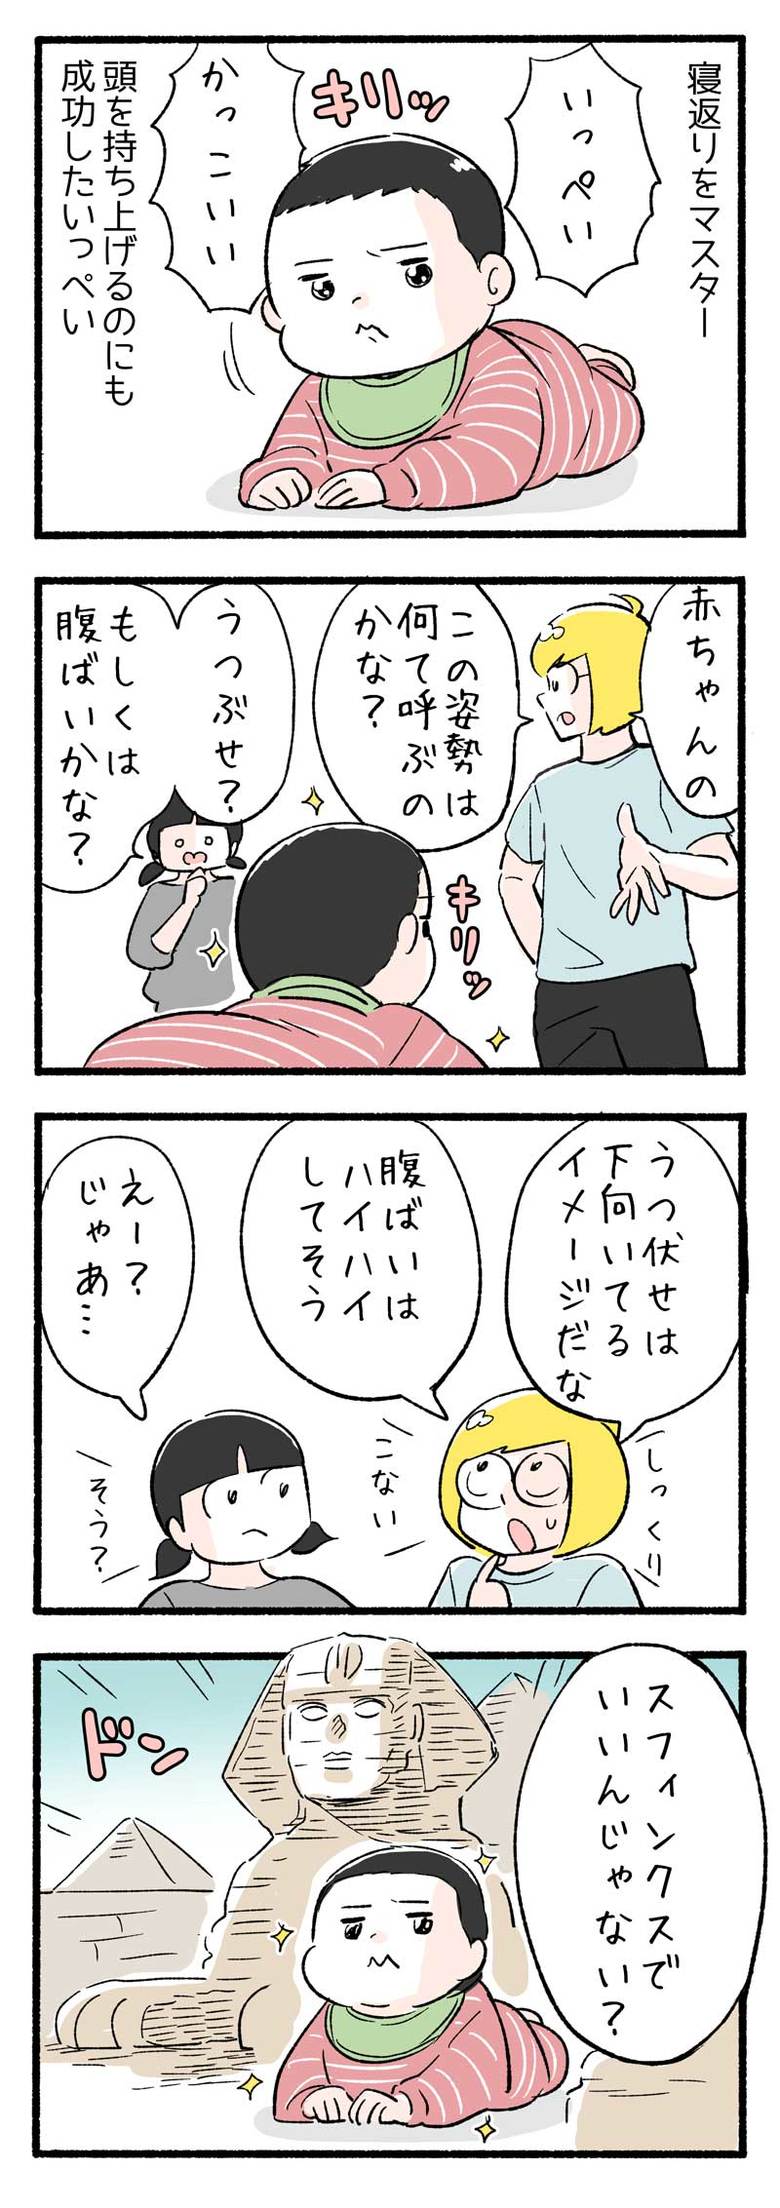 manga-nihipapa19-5